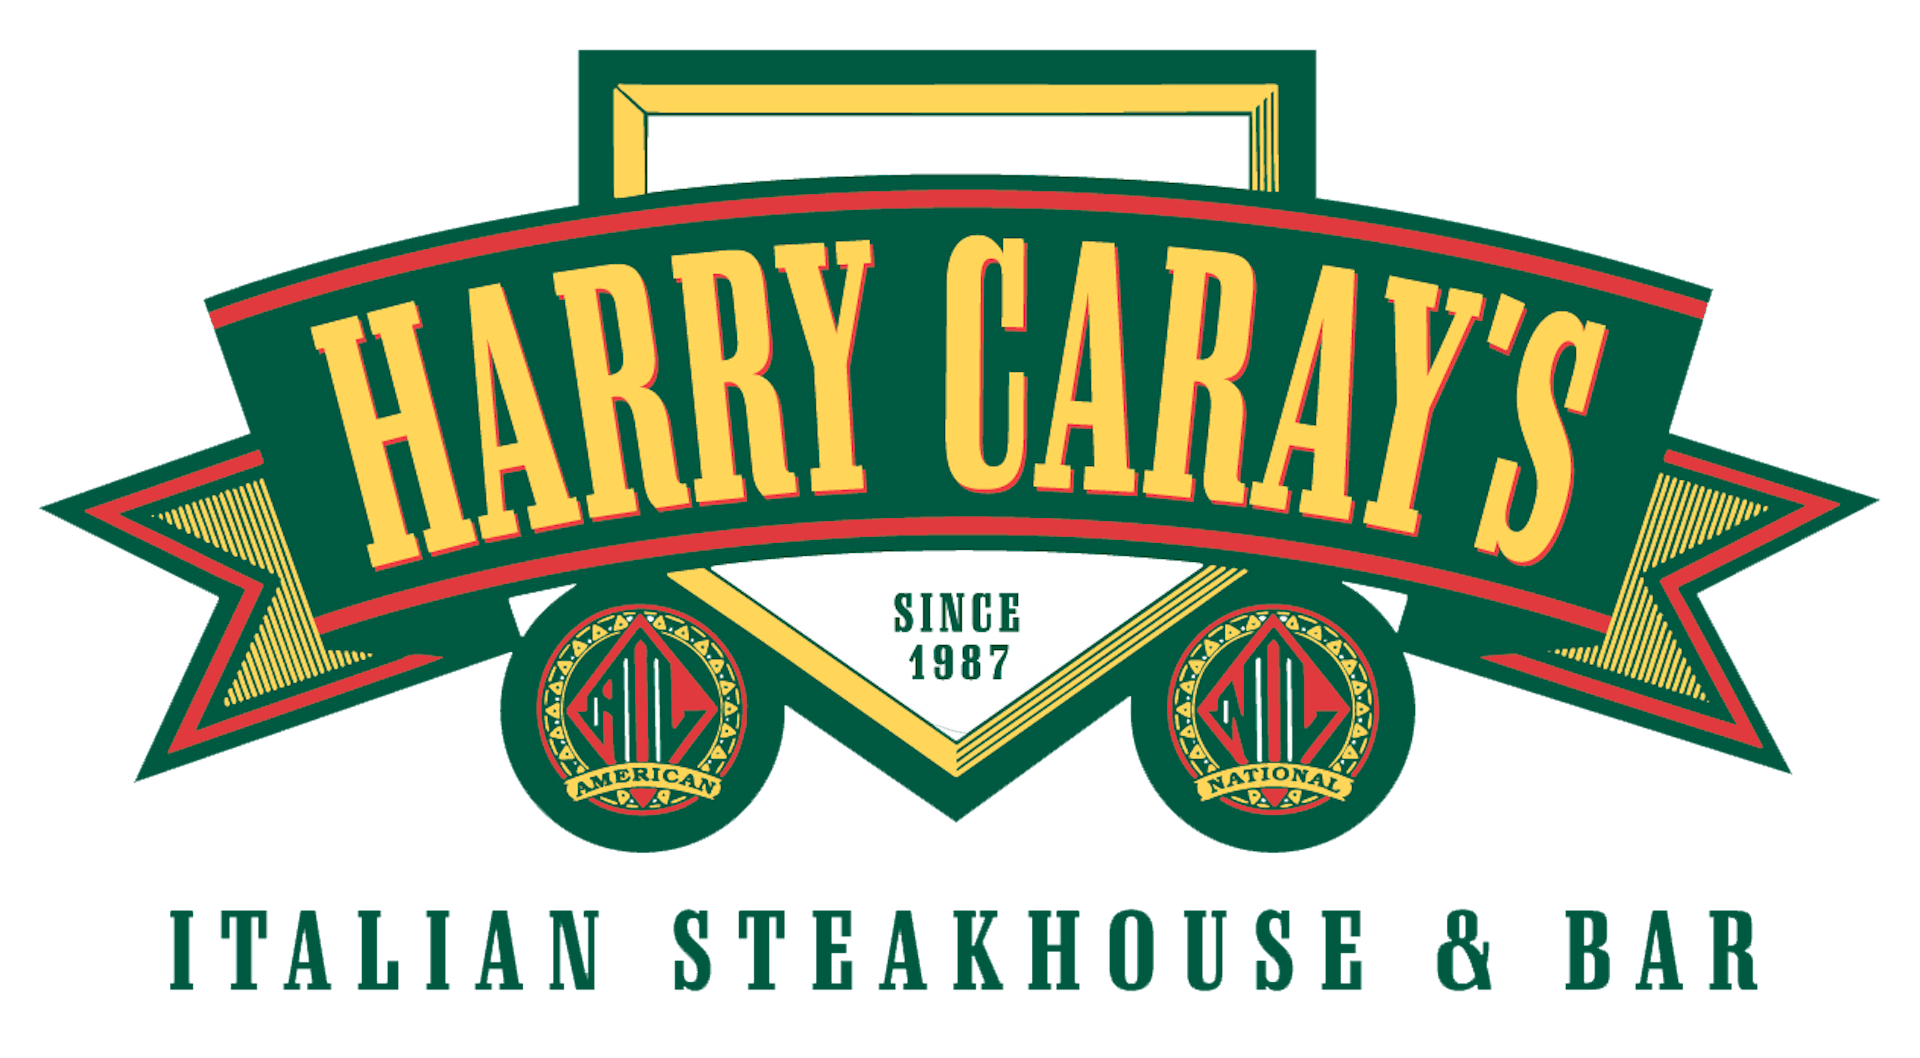 Harry Caray's Tavern